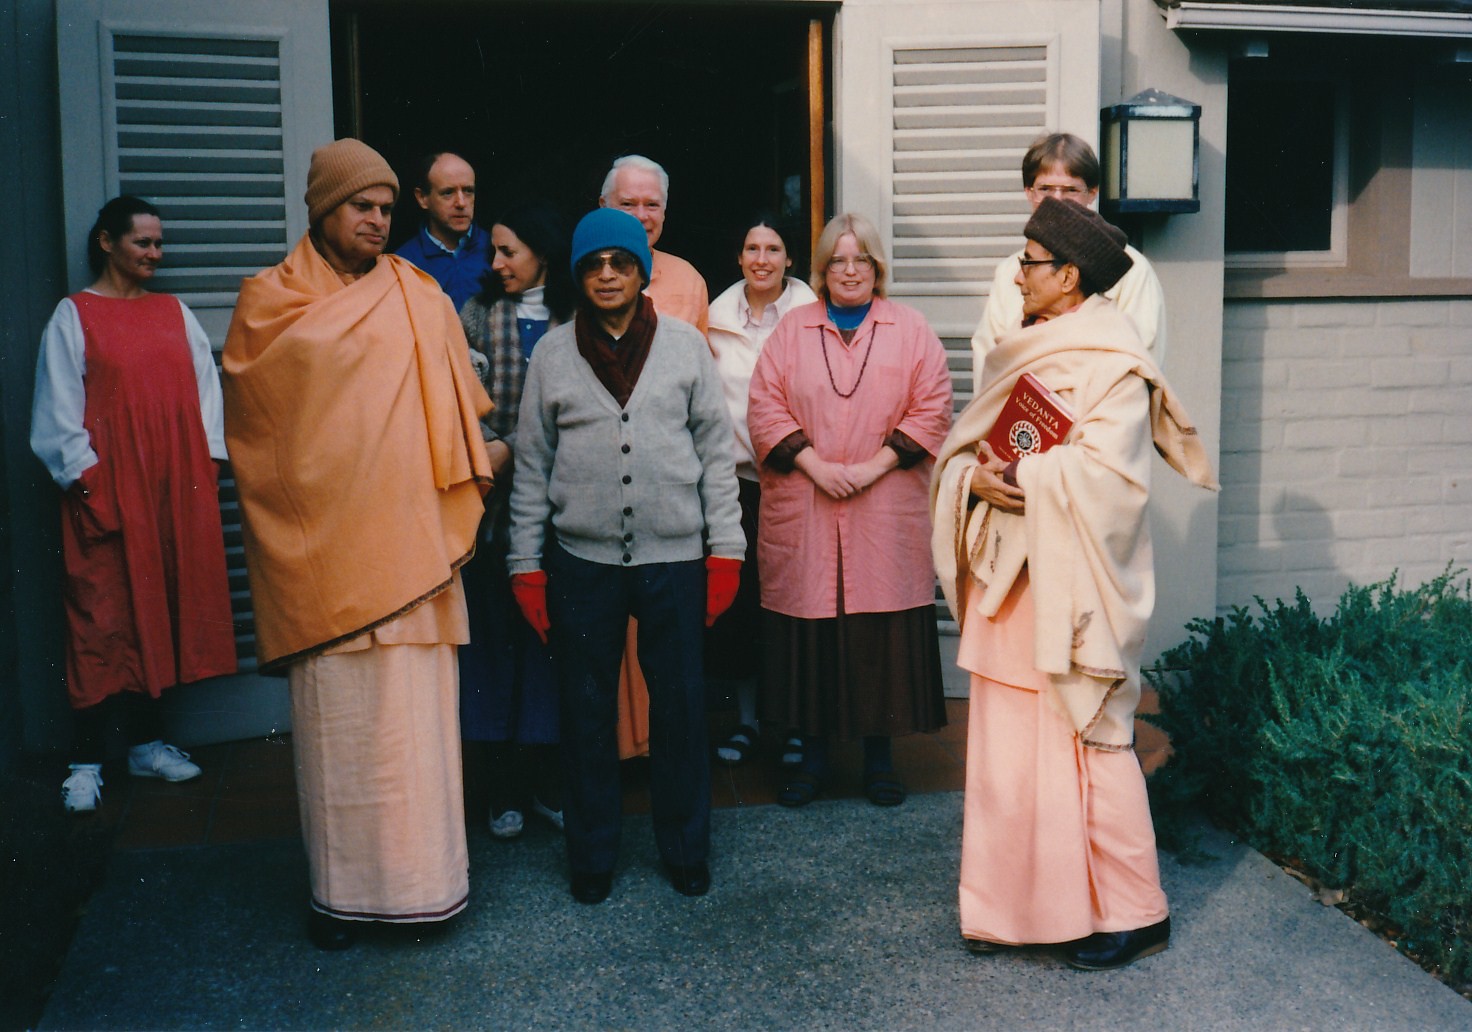 SarahO' Malley Swami Swahananda Steve Johnson Monical Sam Swami Shraddhananda Swami Ganeshananda Aparna Of Santa Barbara Celestial Everone Patrick Wagner Swami Pramathananda